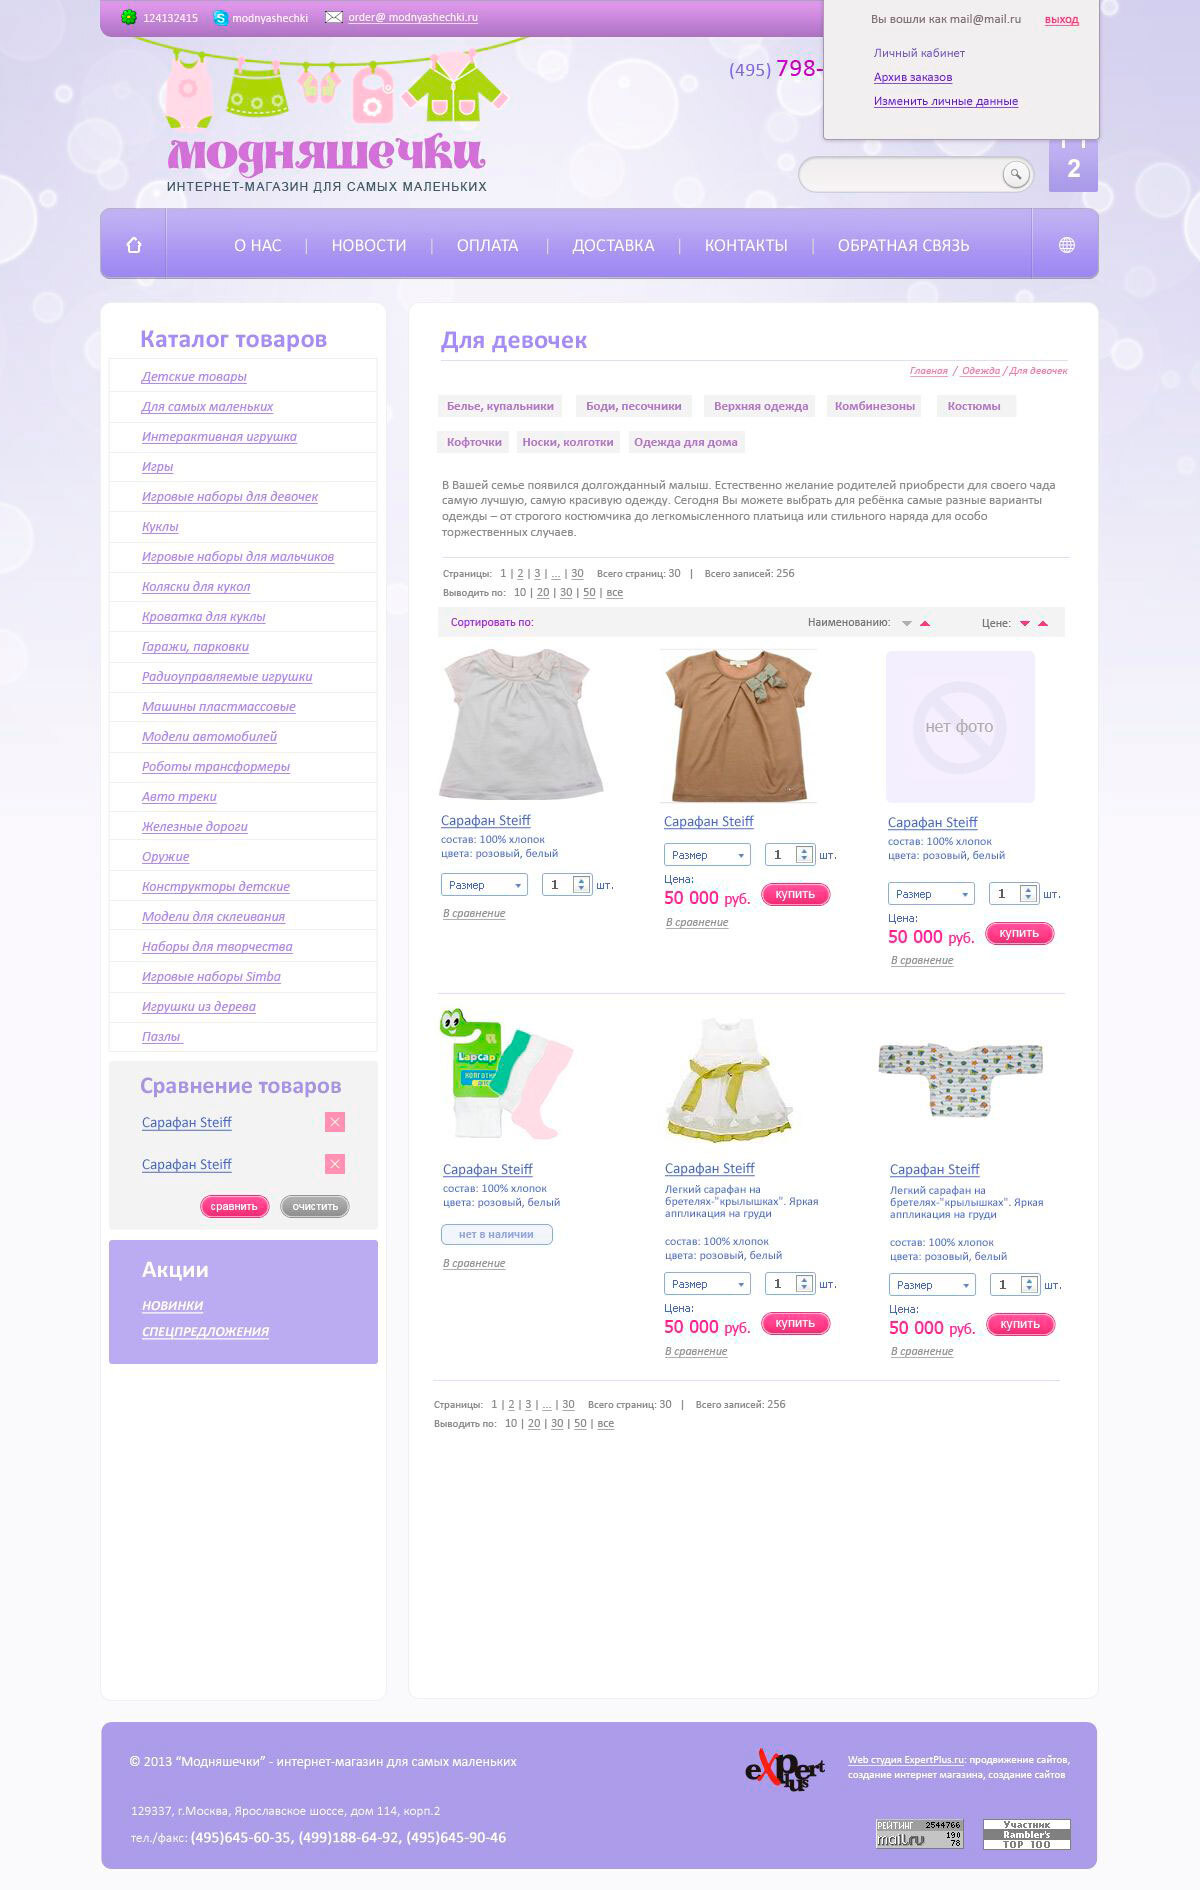 Интернет-магазин детских товаров "Модняшечки"